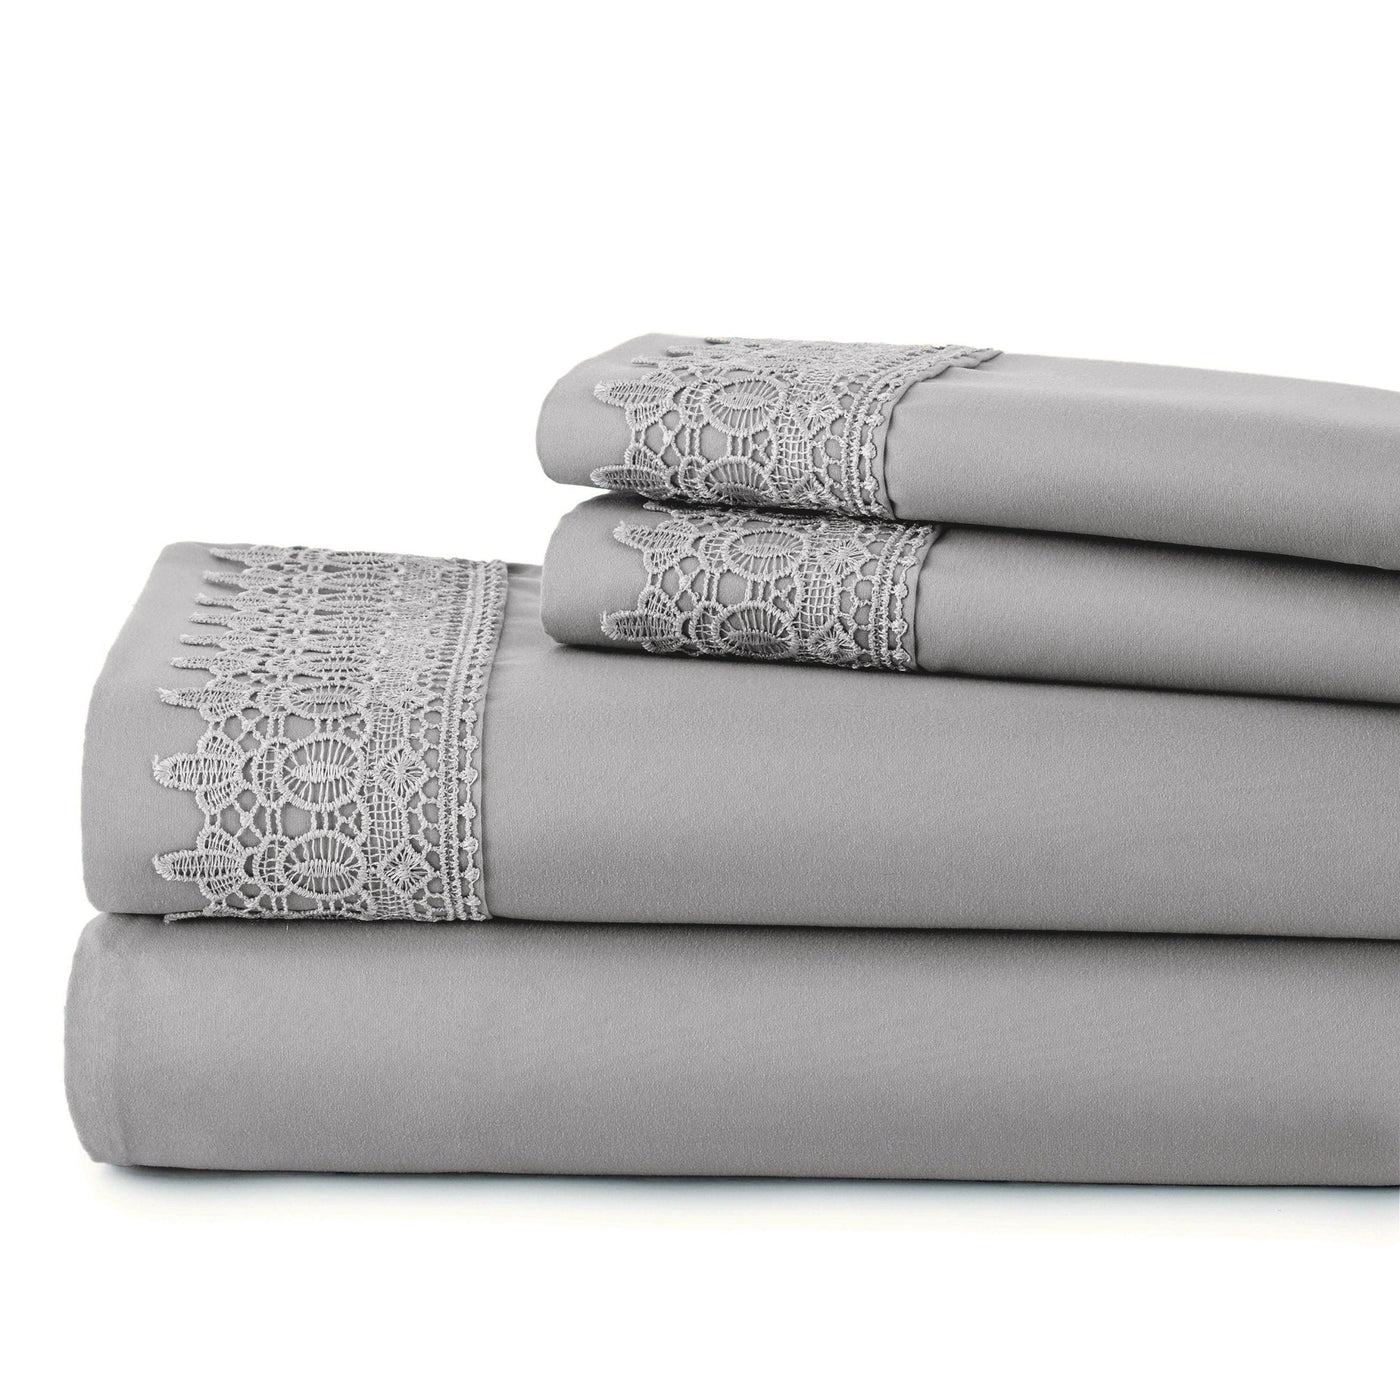 Vilano Extra Deep Pocket Lace Hem Sheet Set in Steel Grey Stack Together#color_vilano-steel-gray